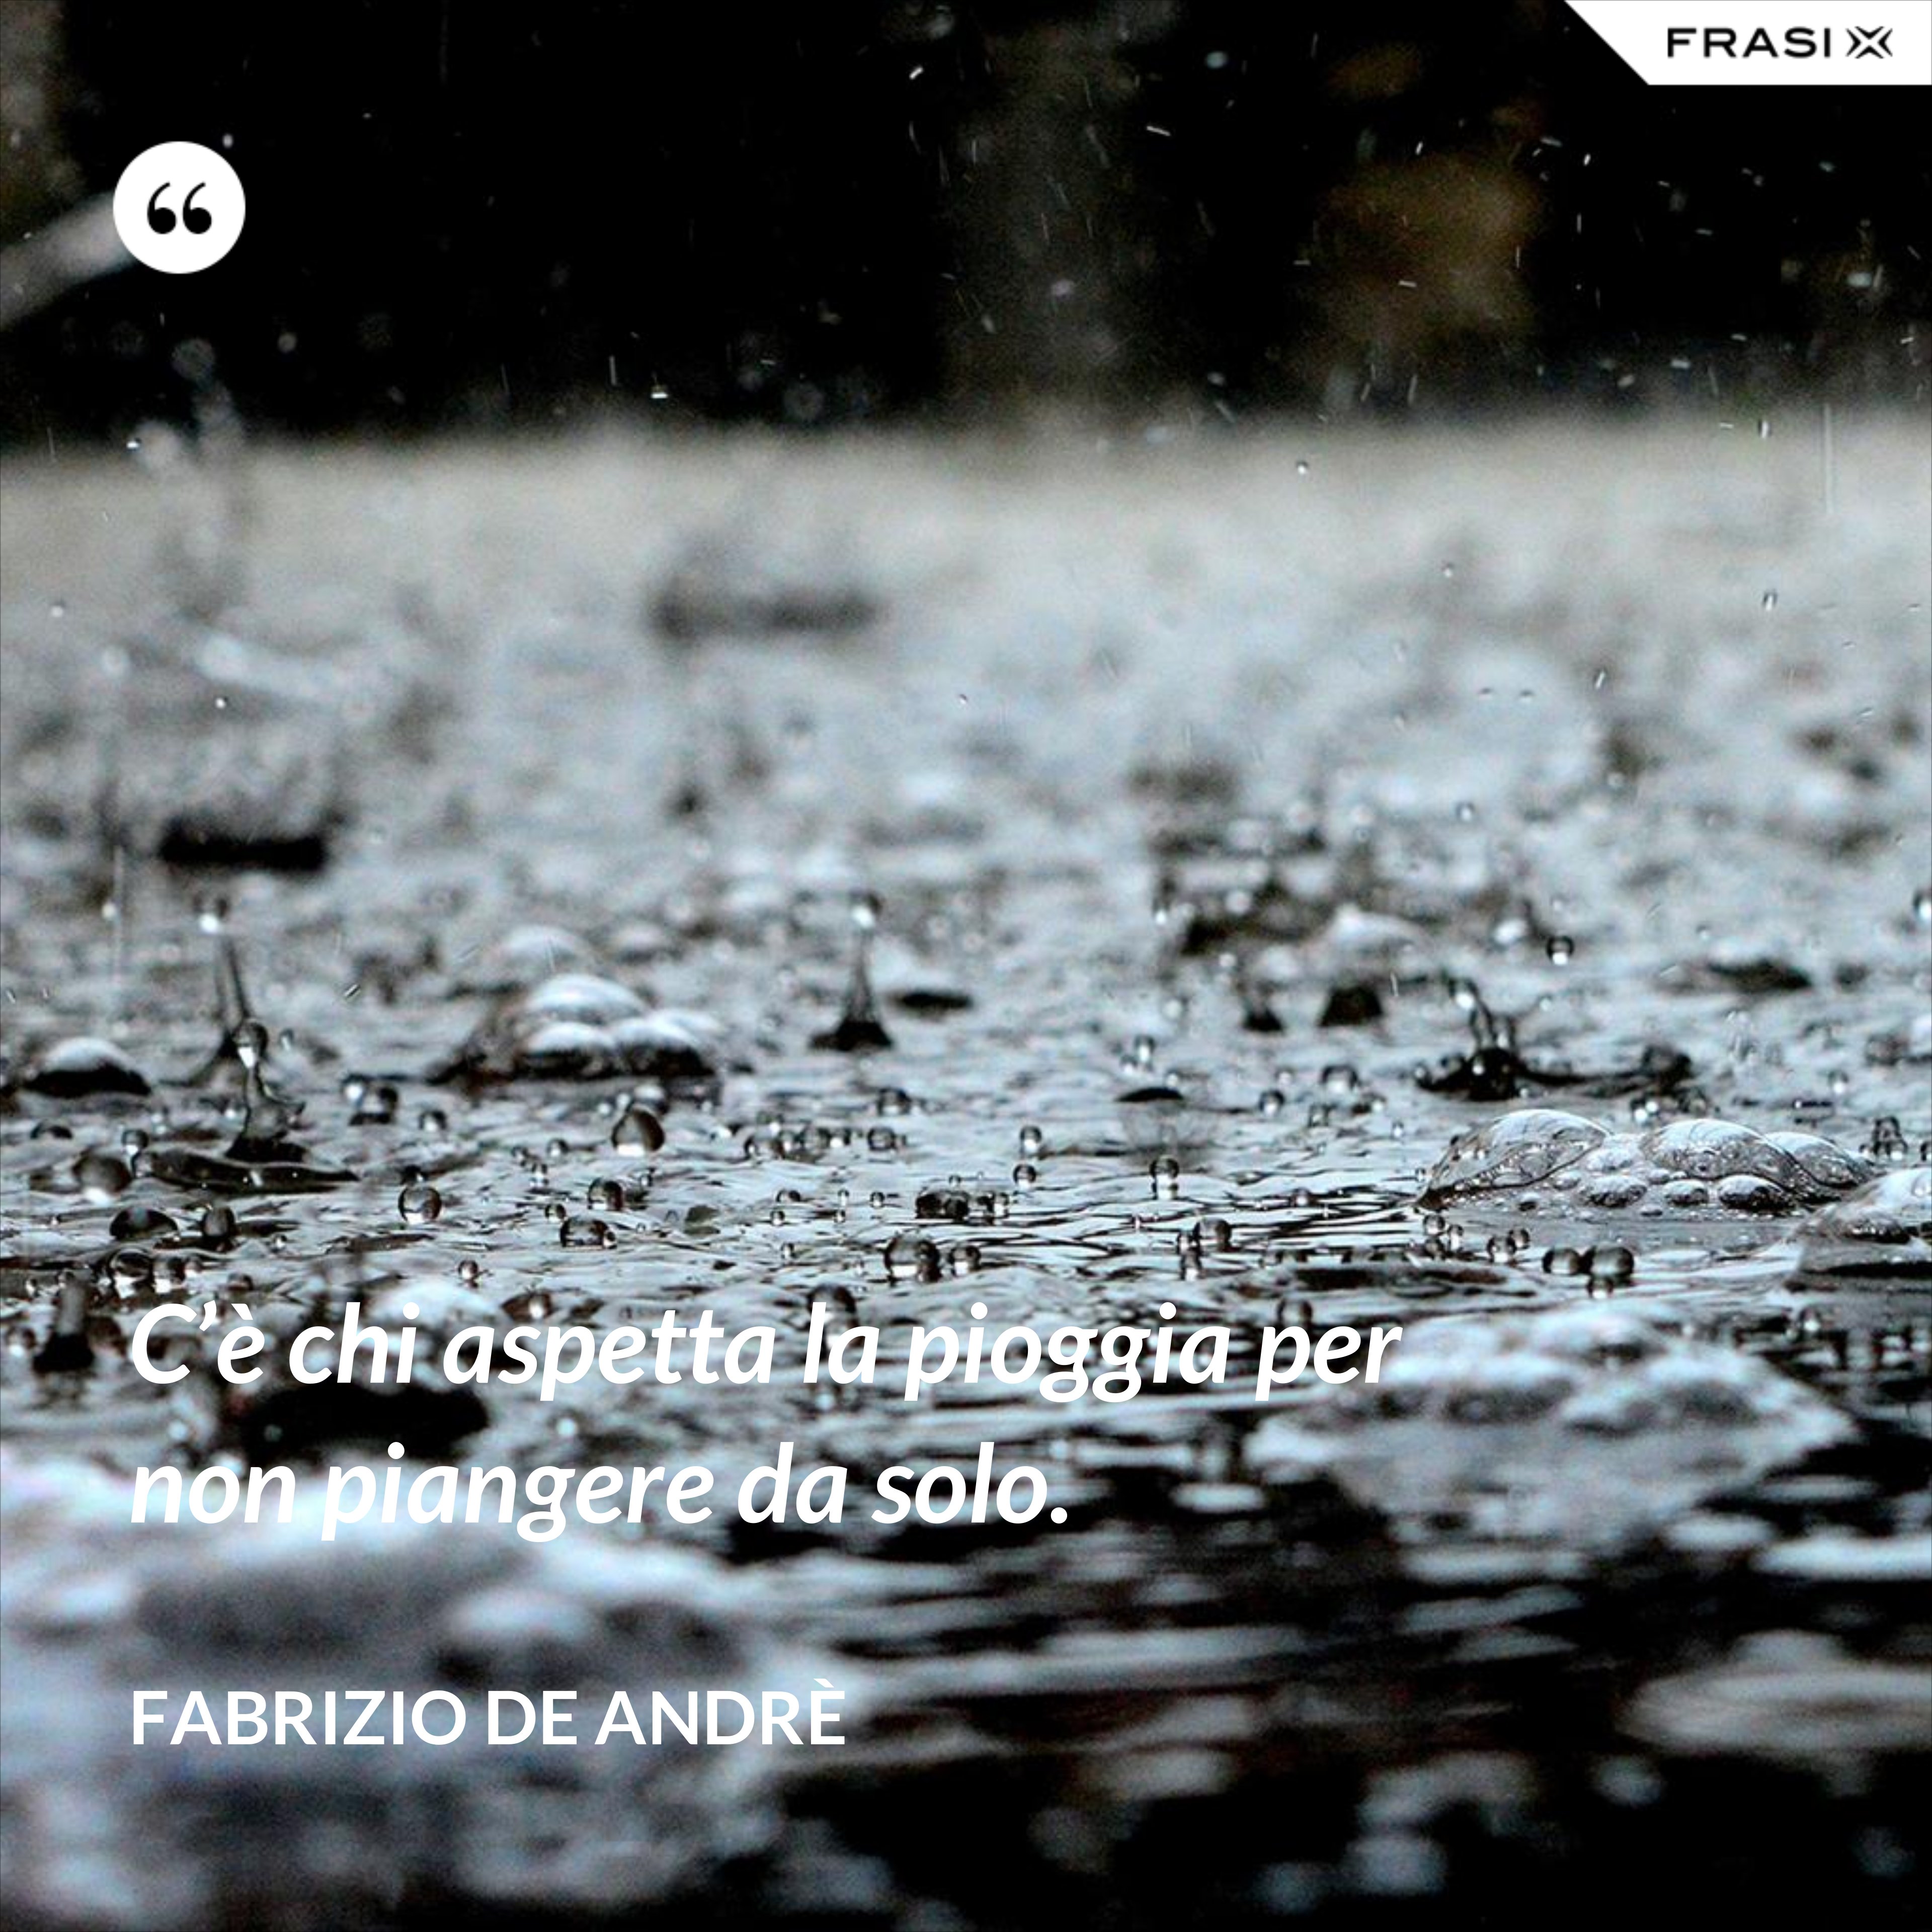 C’è chi aspetta la pioggia per non piangere da solo. - Fabrizio De Andrè